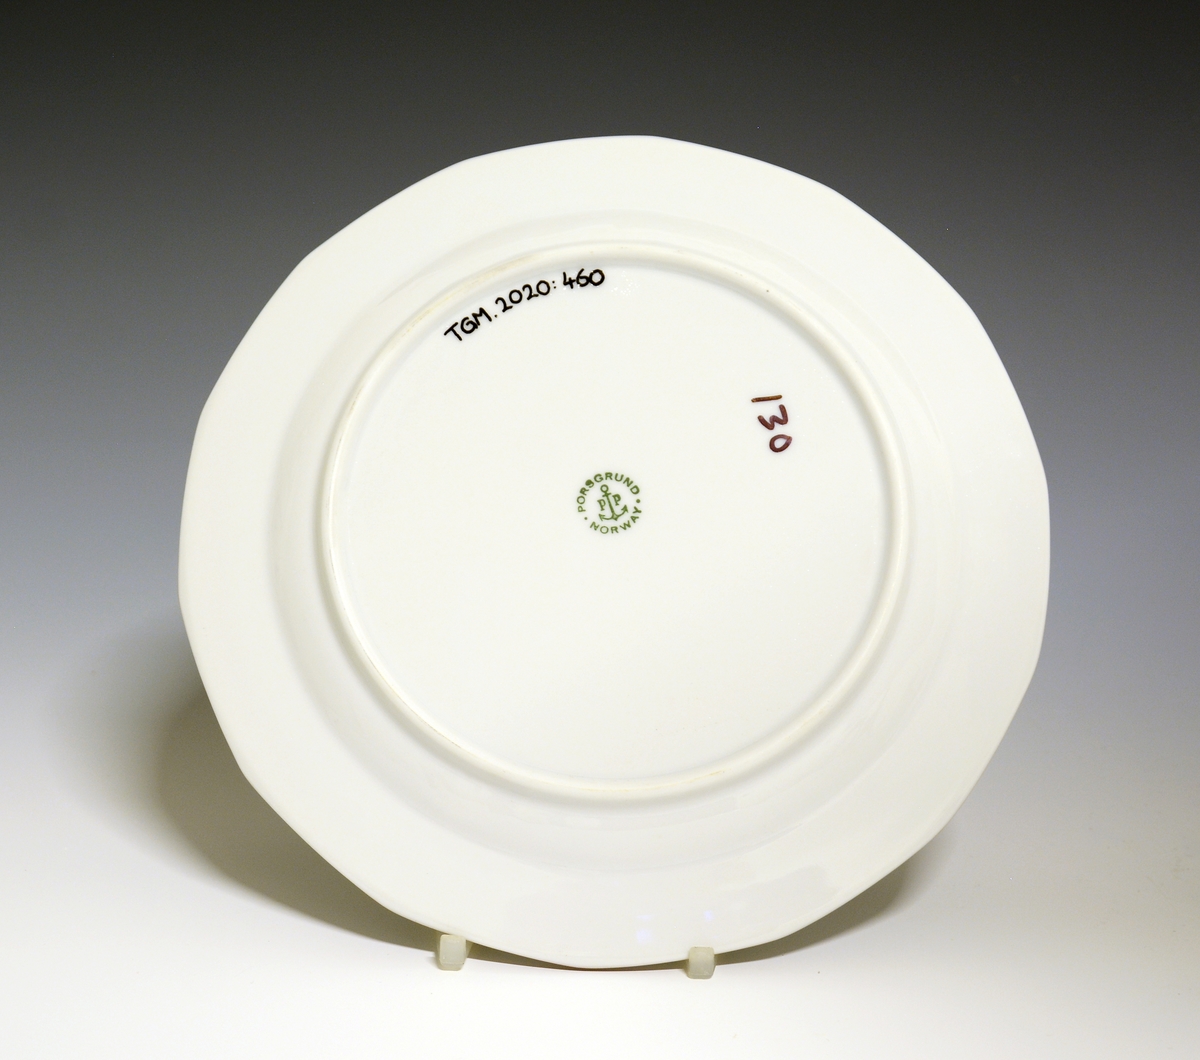 Mangekantet tallerken av porselen med hvit glasur. Dekorert med rød strek ytterst på fanen. 
Modell: Octavia, tegnet av Grete Rønning i 1977.
Dekor: Rød Strek